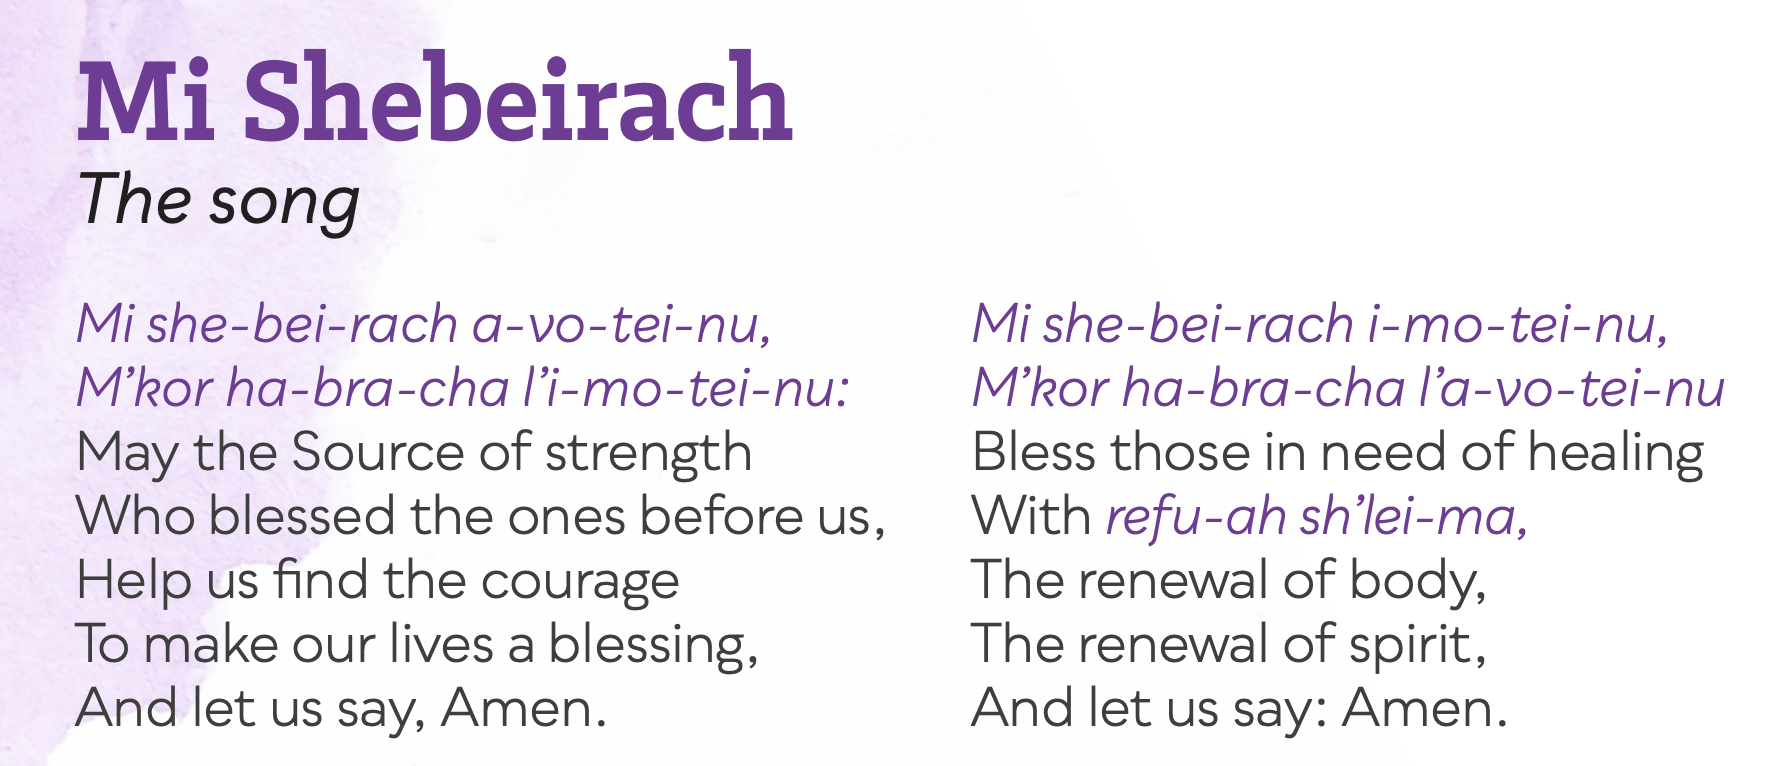 The Healing Power of Mi Shebeirach Prayer